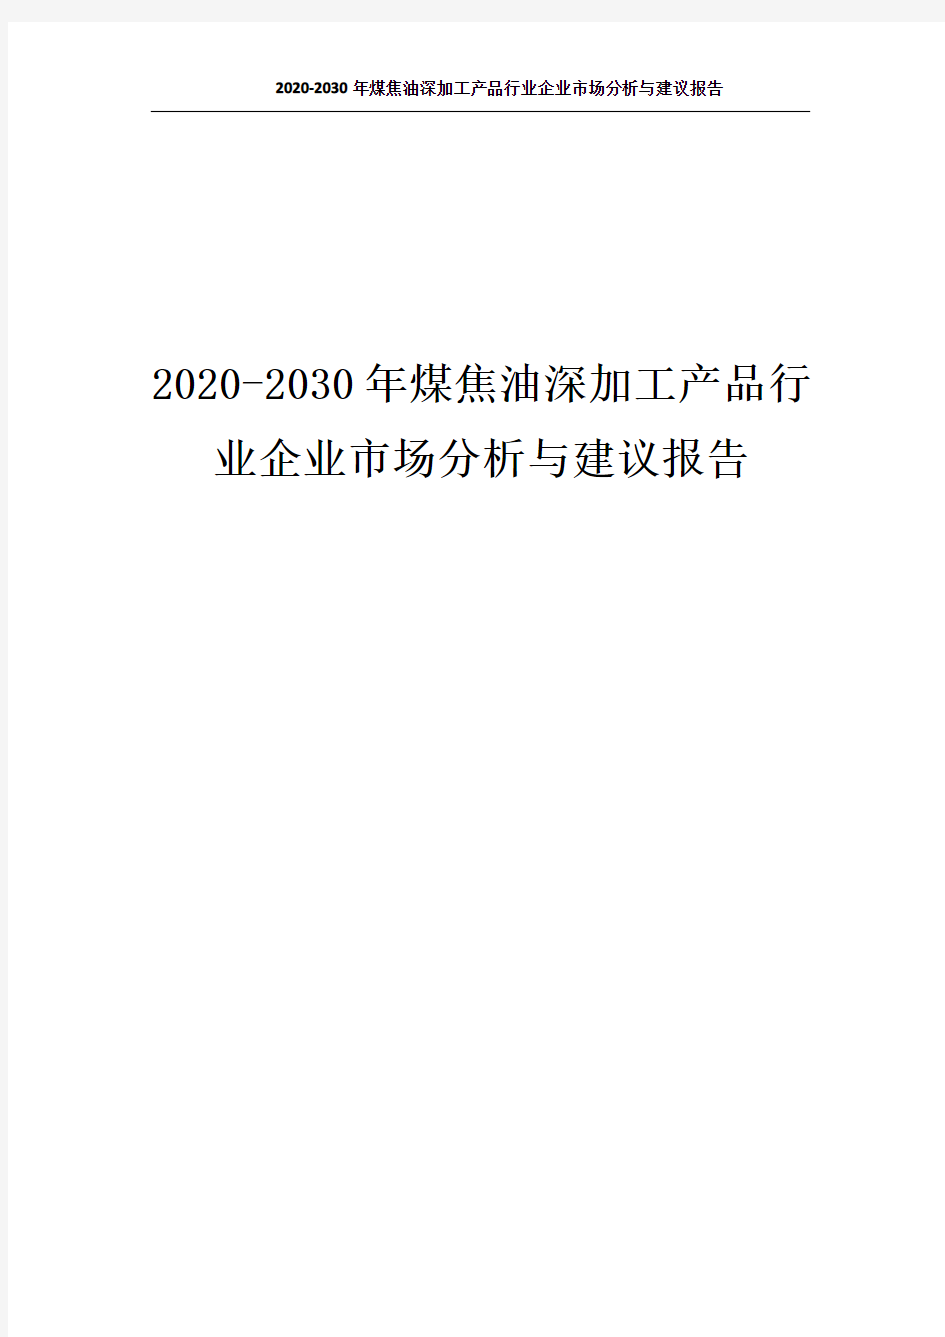 4719.2020-2030年煤焦油深加工产品行业企业市场分析与建议报告